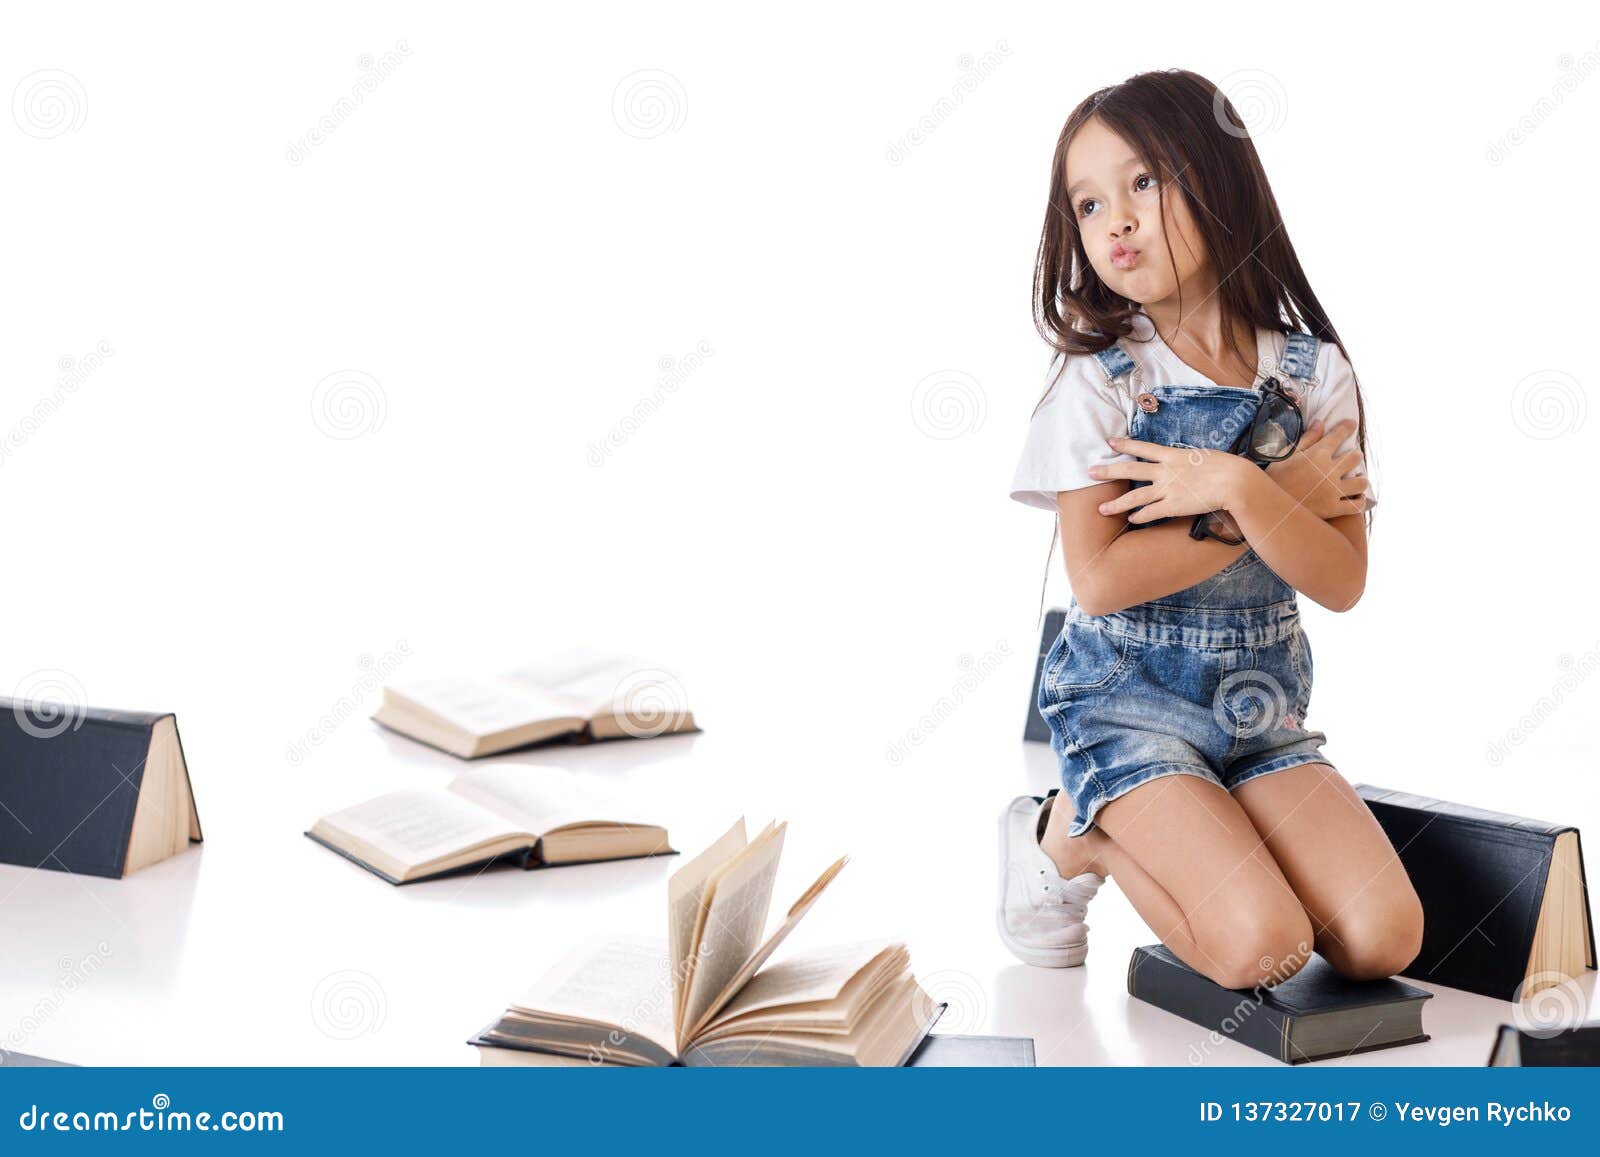 Gasvormig Pelgrim maaien Het Leuke Meisje Leest Een Boek Stock Afbeelding - Image of levensstijl,  leren: 137327017